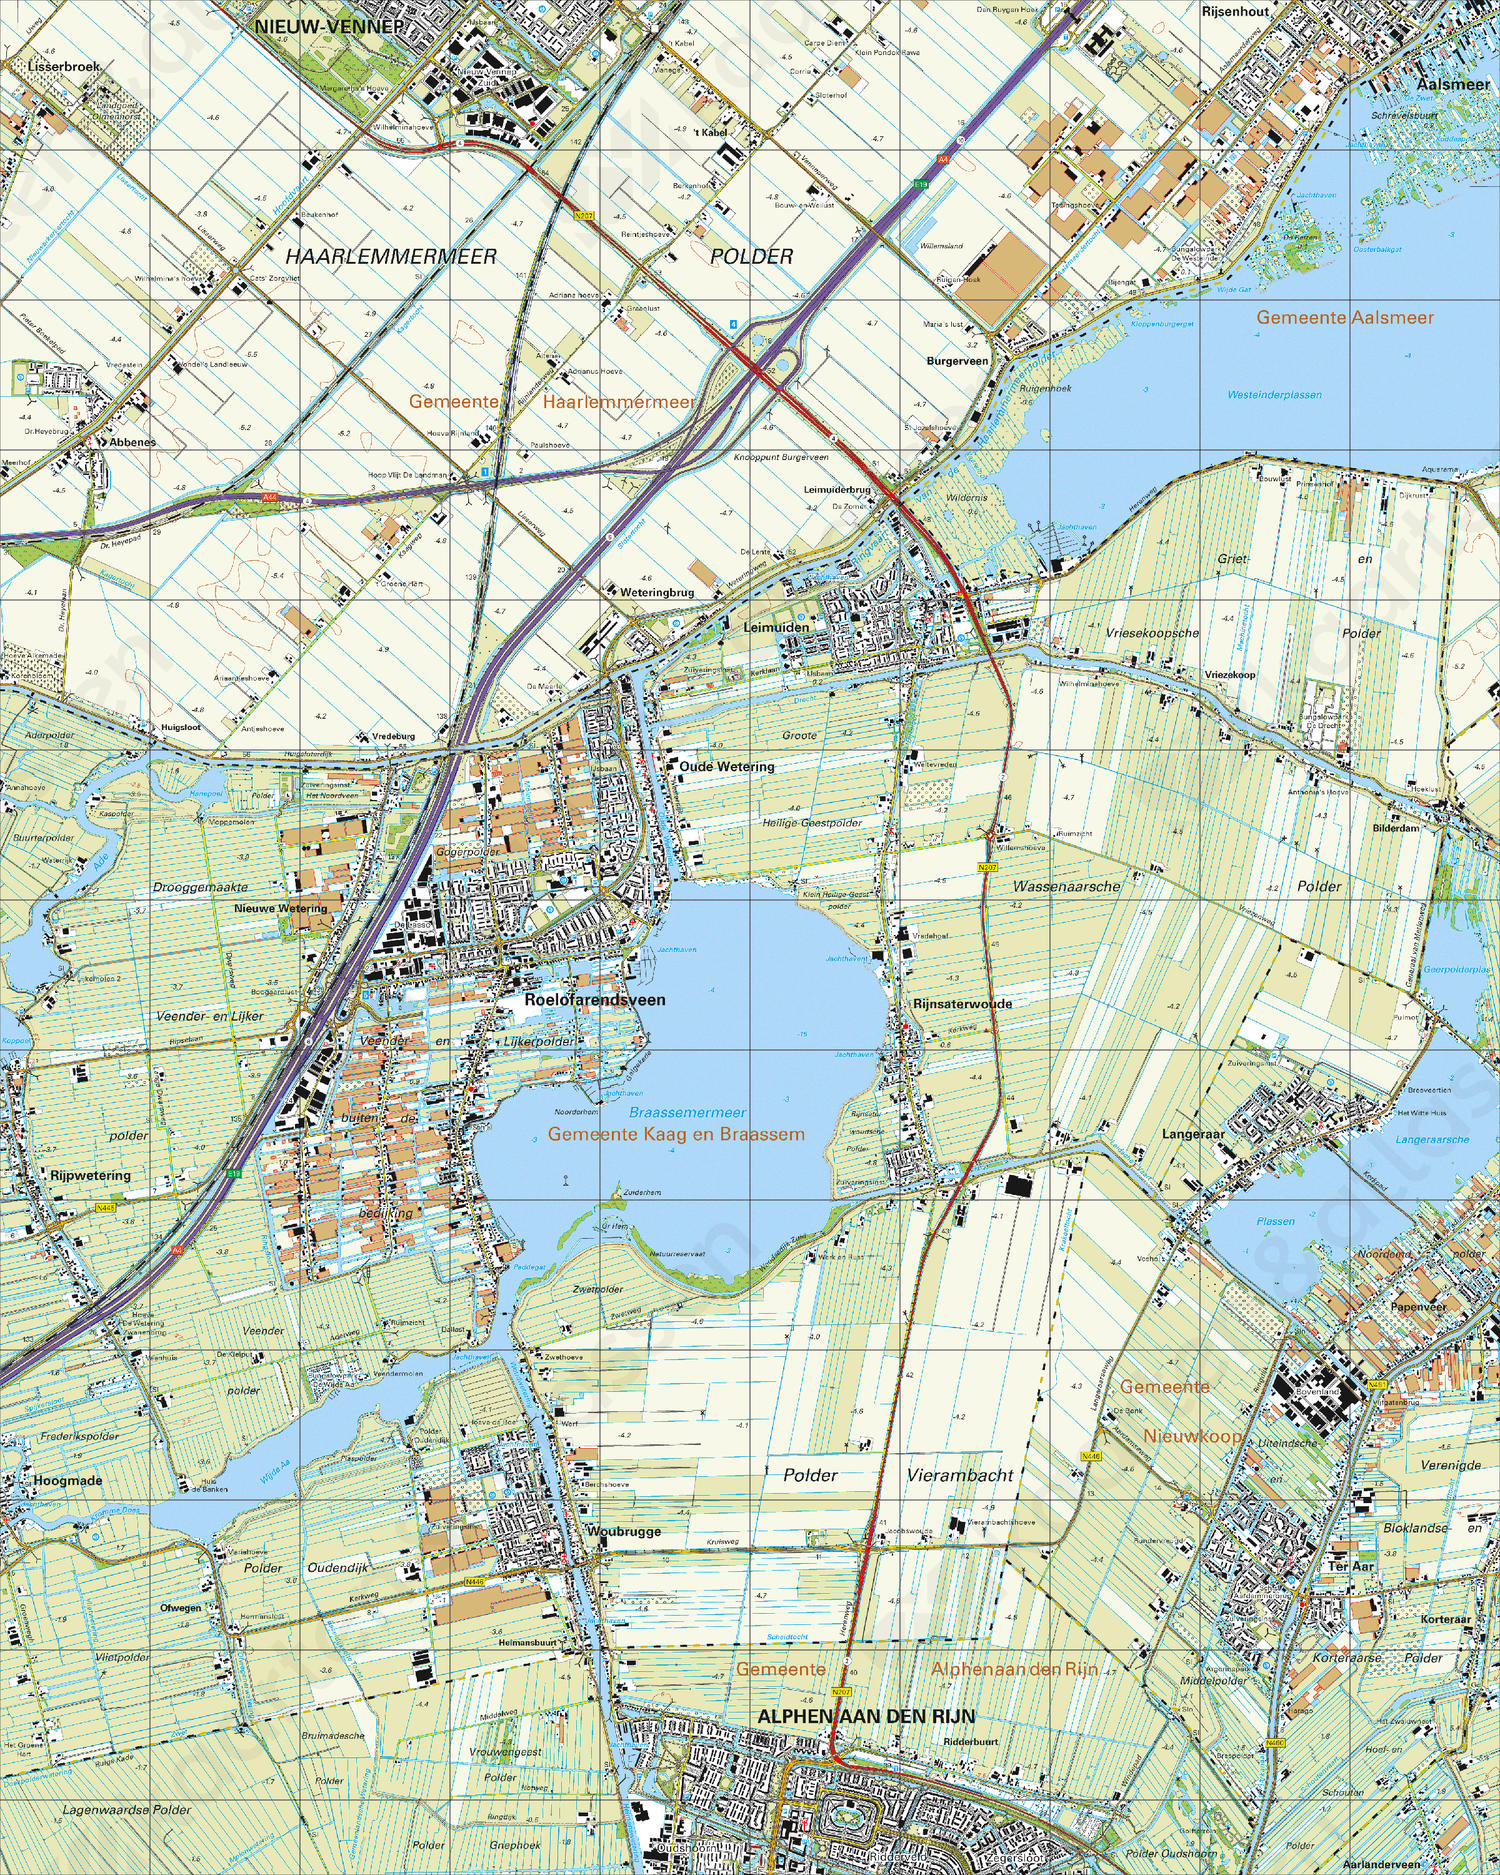 Digitale Topografische Kaart 31A Roelofarendsveen